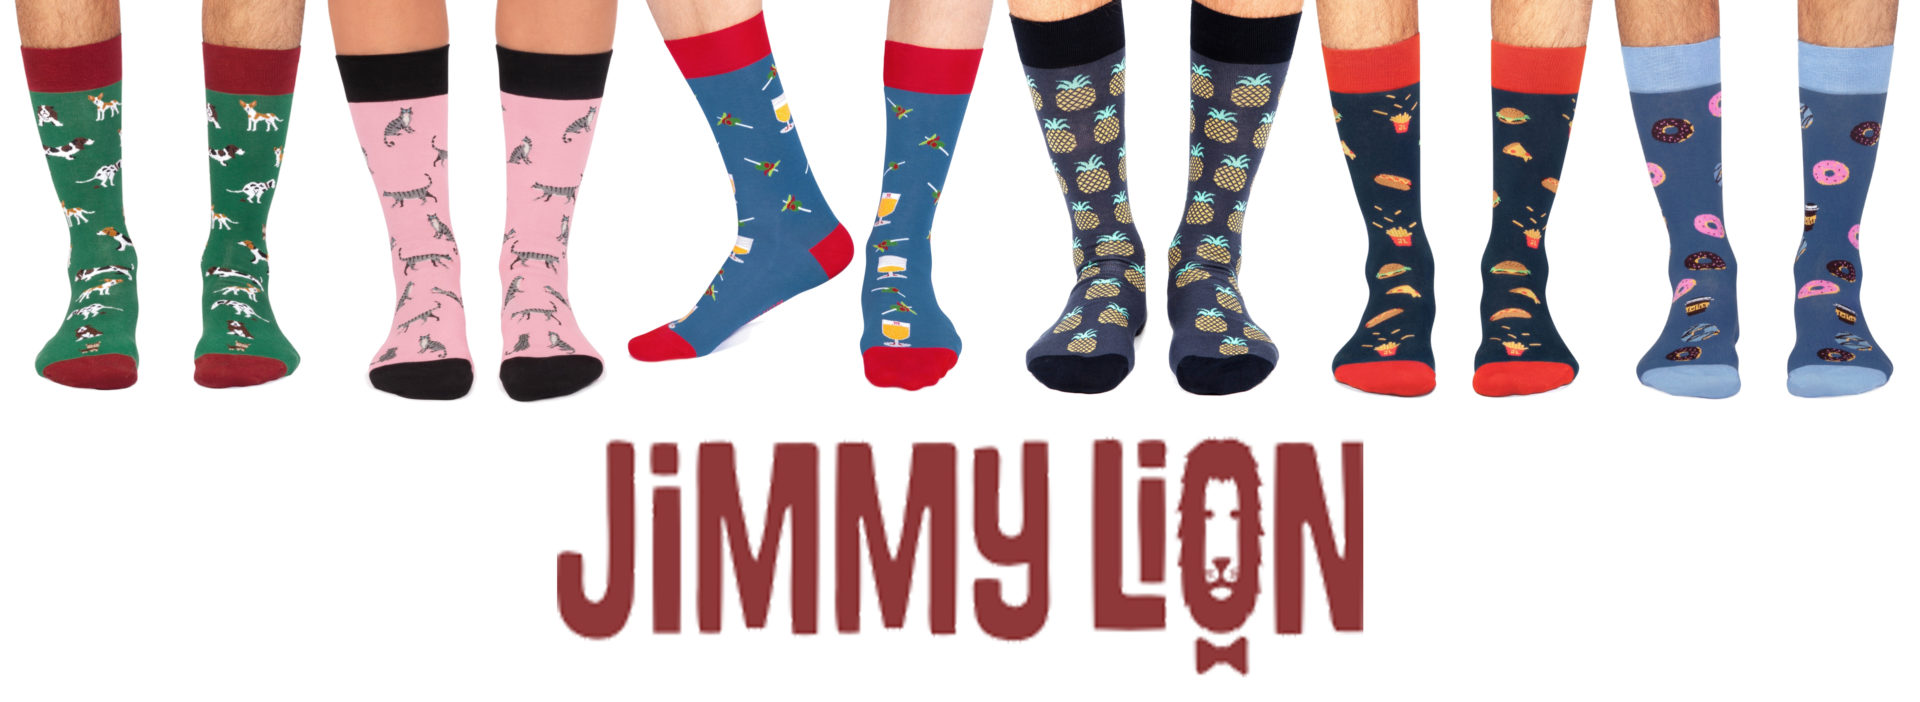 Ya están aquí los nuevos modelos de los calcetines Jimmy Lion!